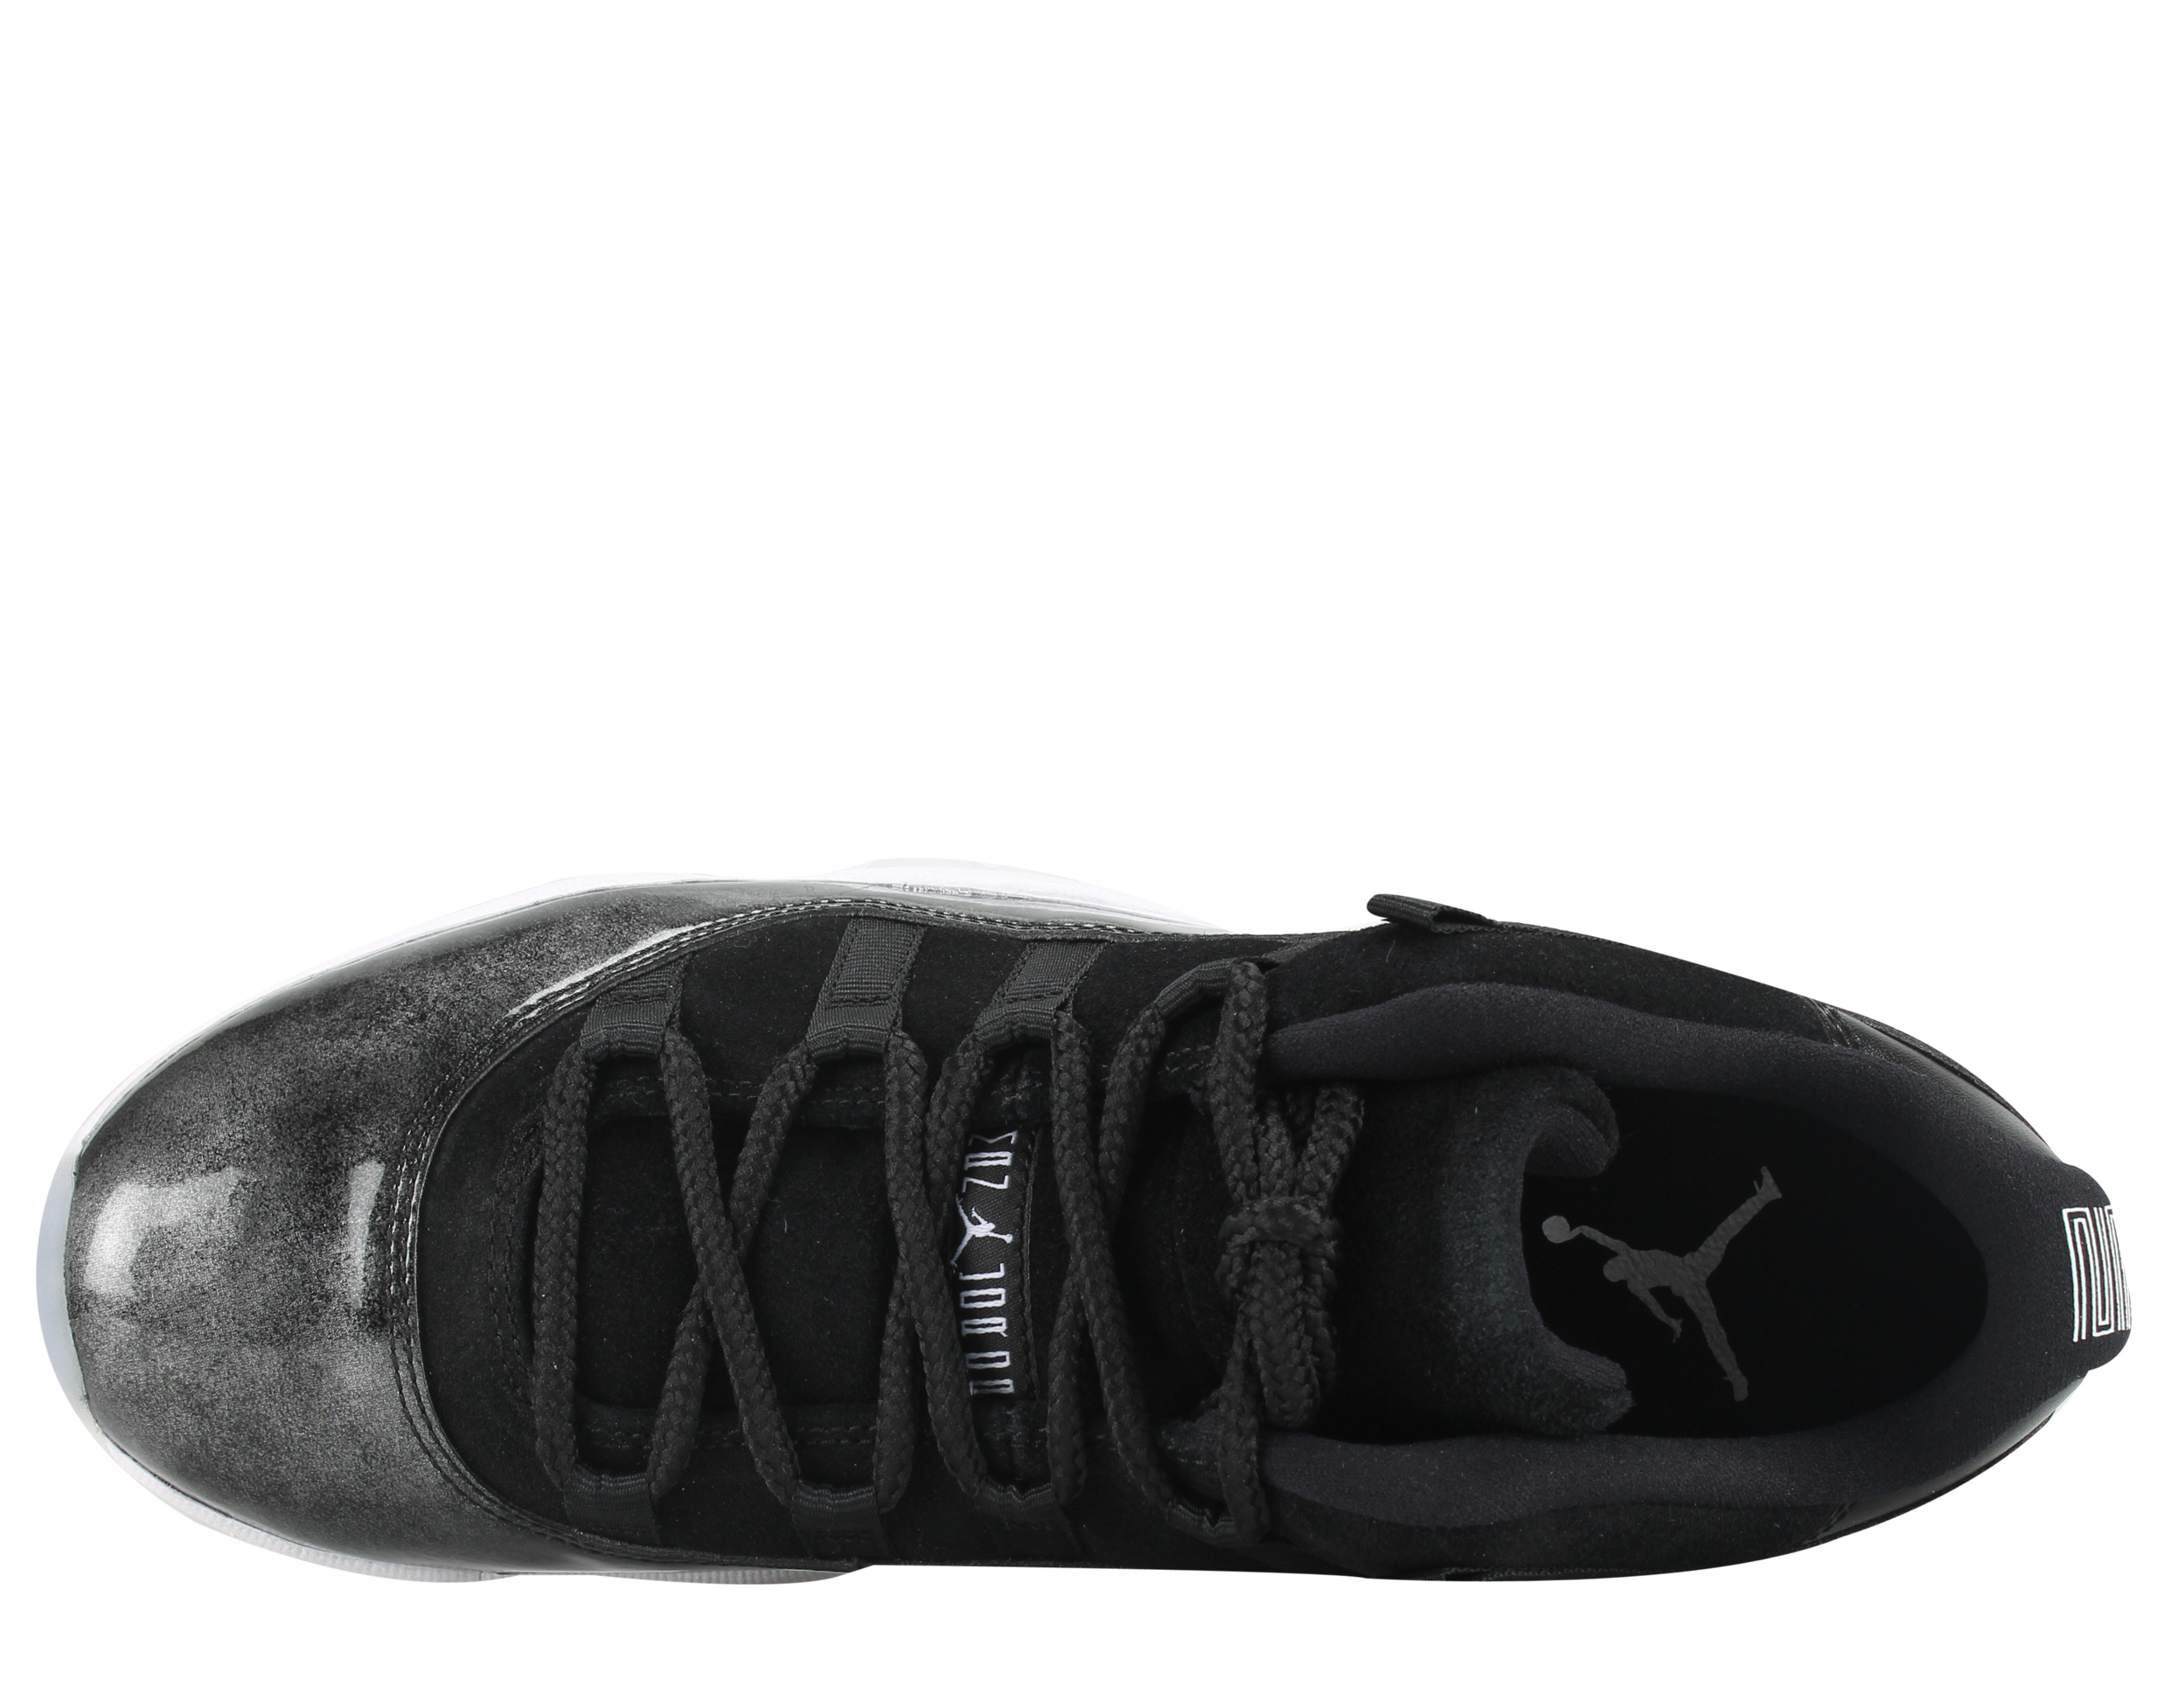 Nike Mens Air Jordan 11 Retro Low "Barons" Black/White-Silver 528895-010 - image 4 of 6